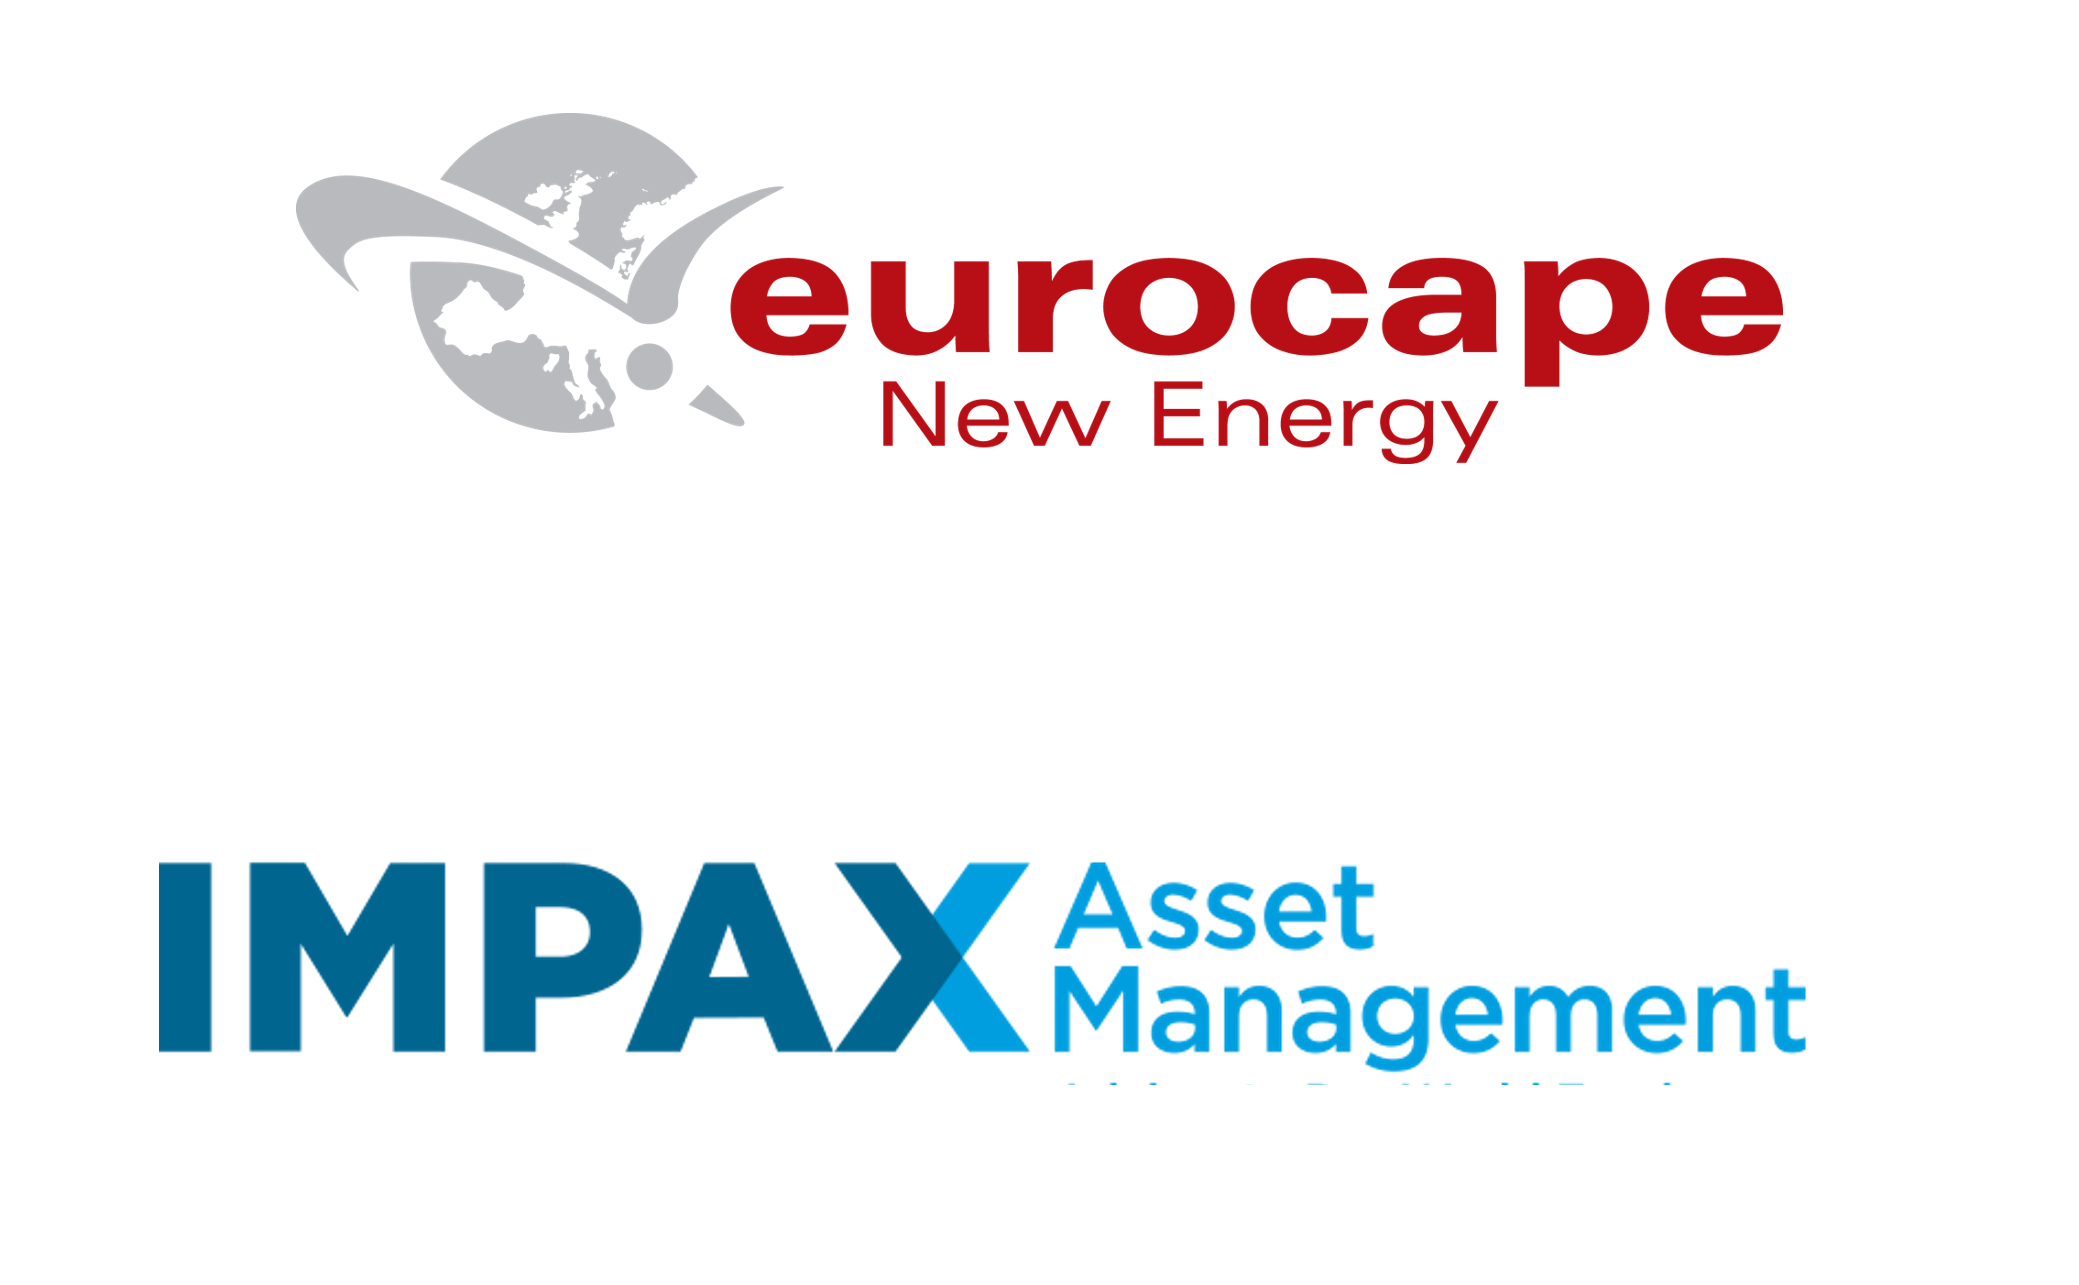 Eurocapre New Energy & Impax AM